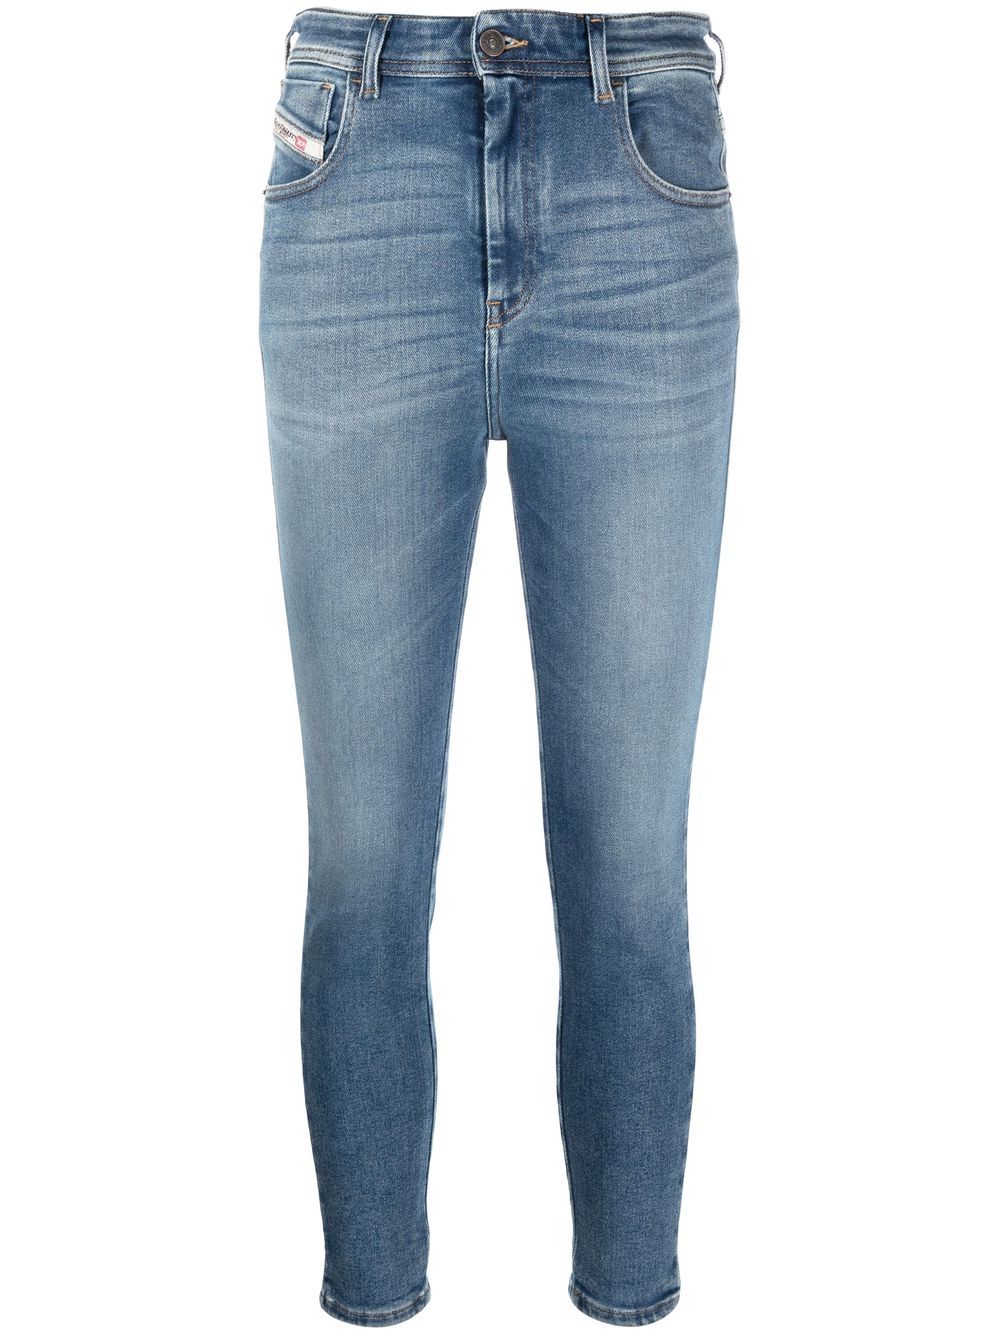 Diesel Slandy Cropped Skinny Jeans - Farfetch